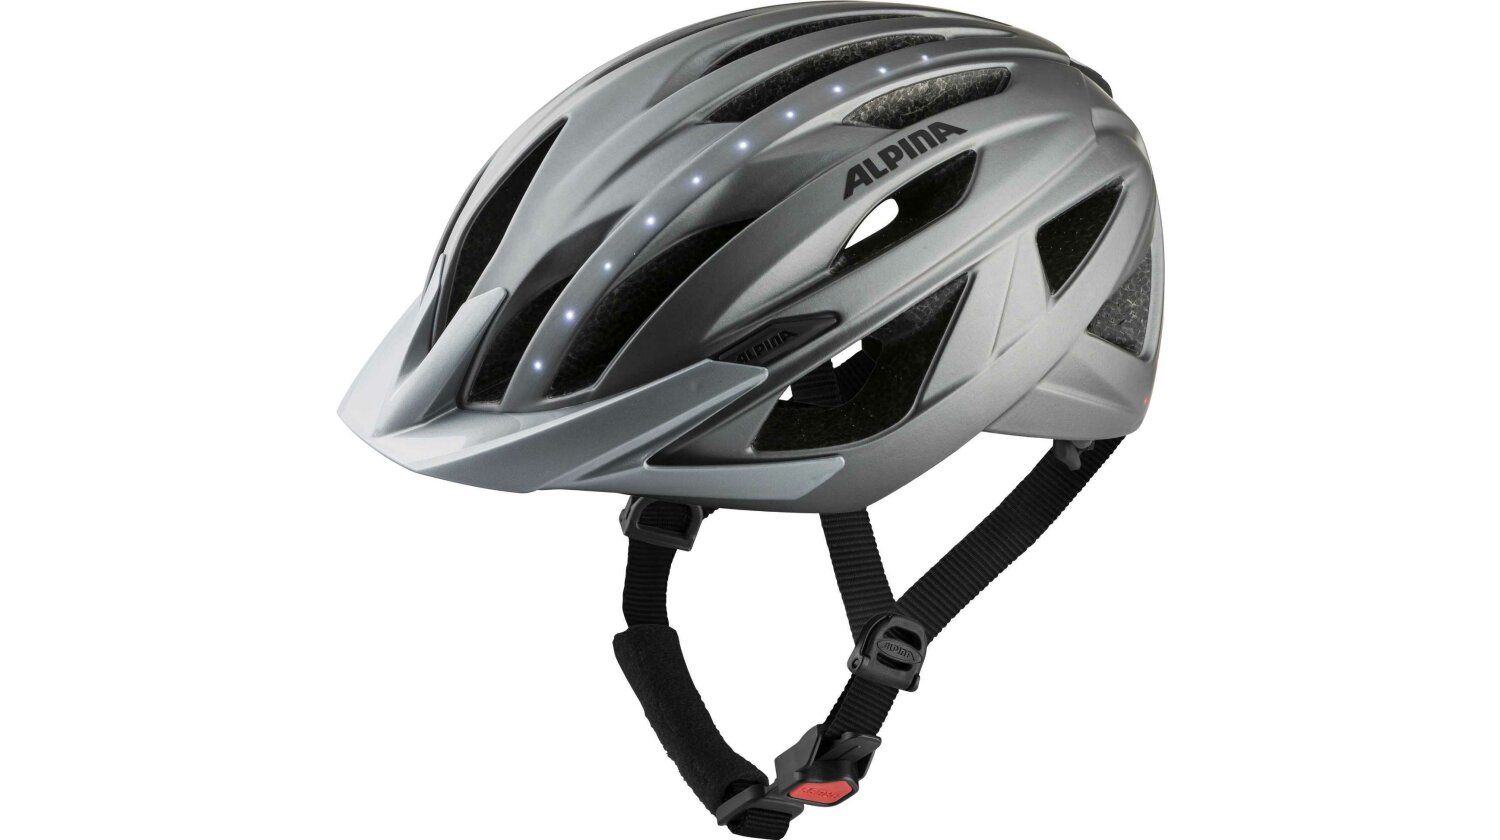 Alpina Haga LED Helm darksilver matt